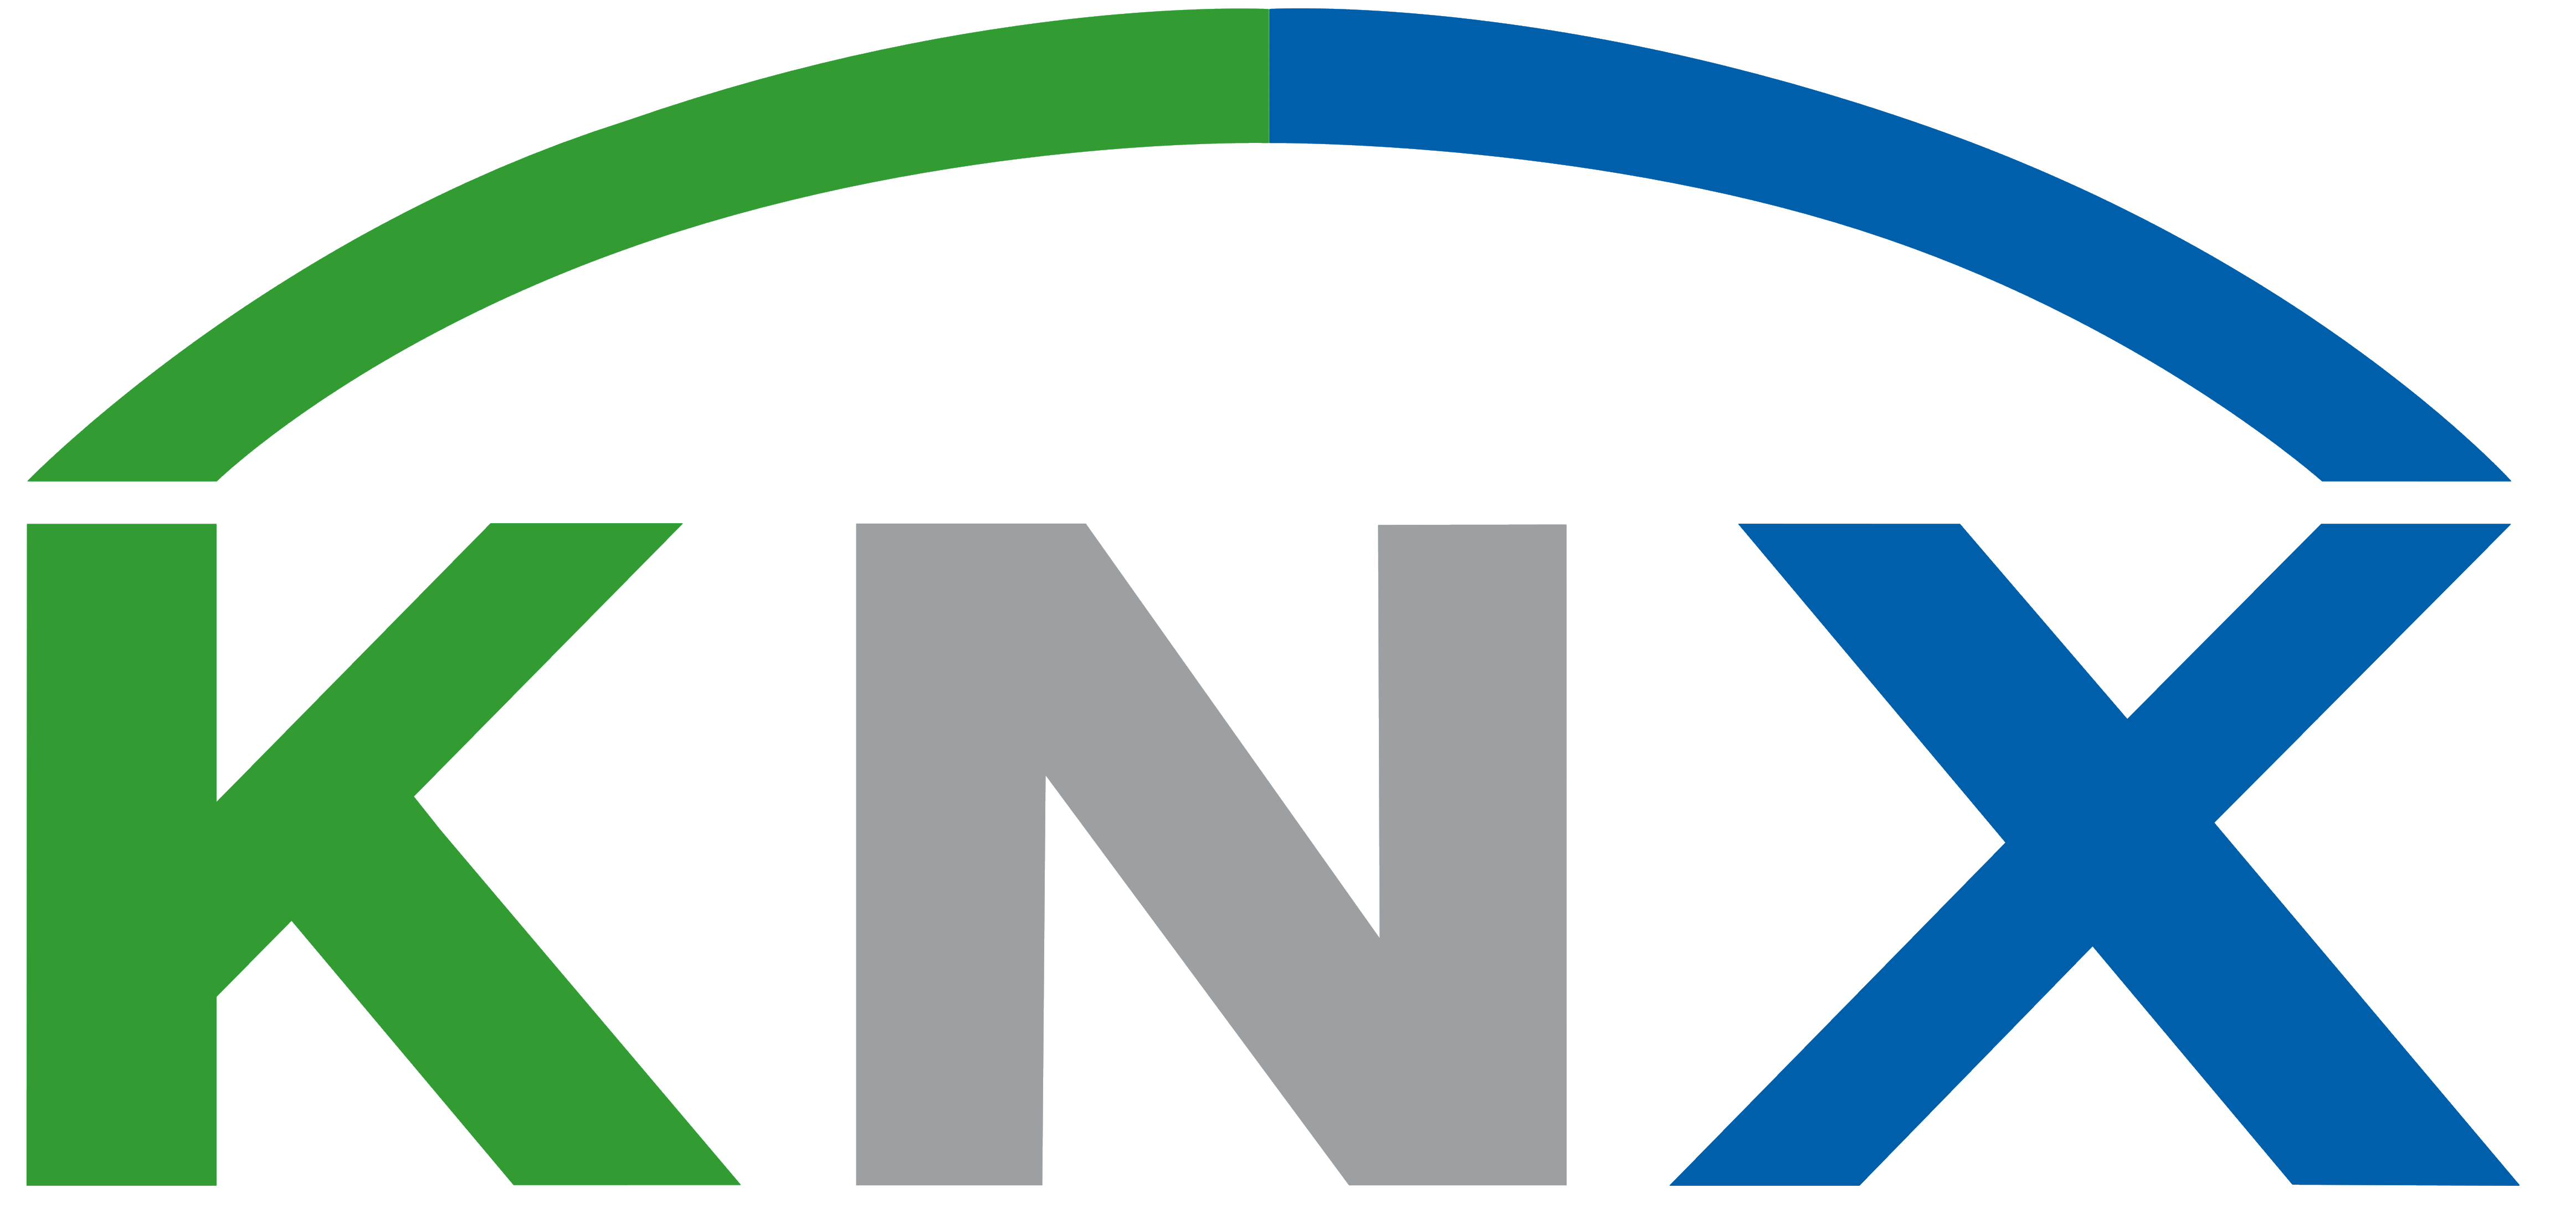 معرفی پروتکل/ استاندارد KNX